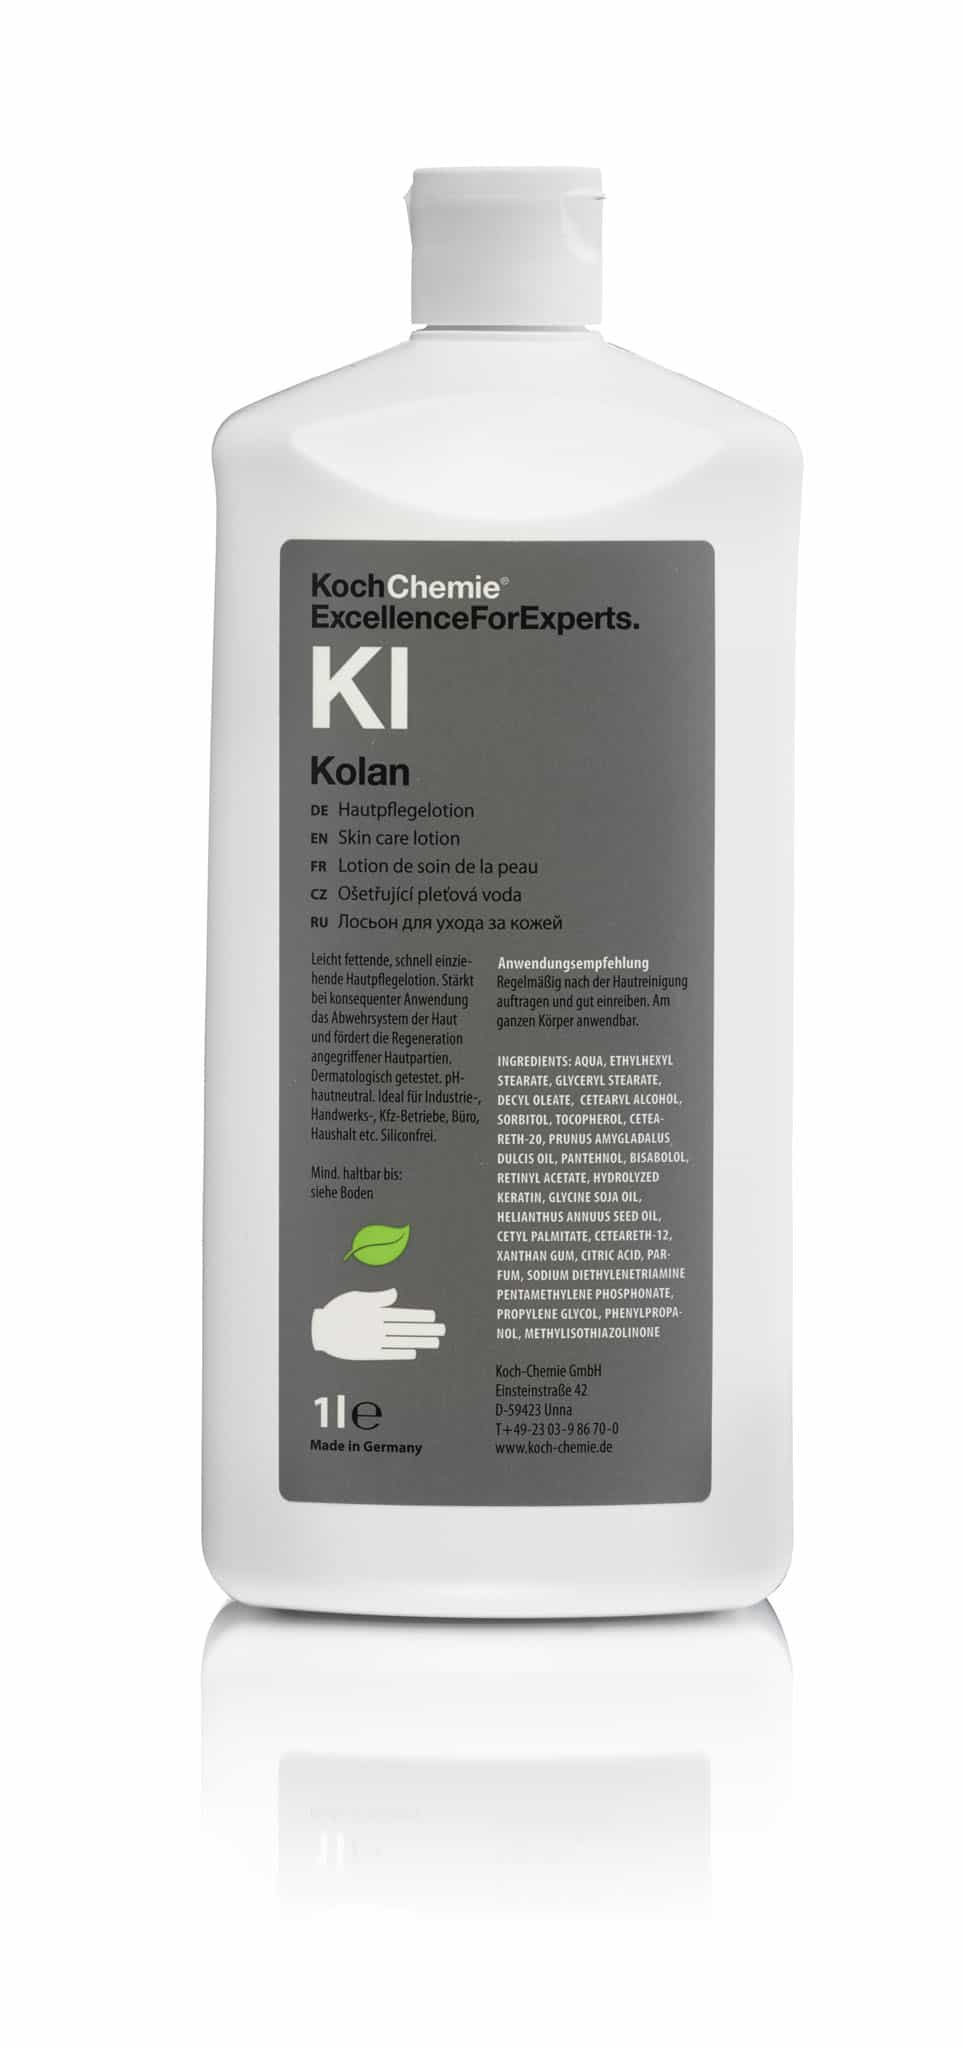 Koch-Chemie Kolan